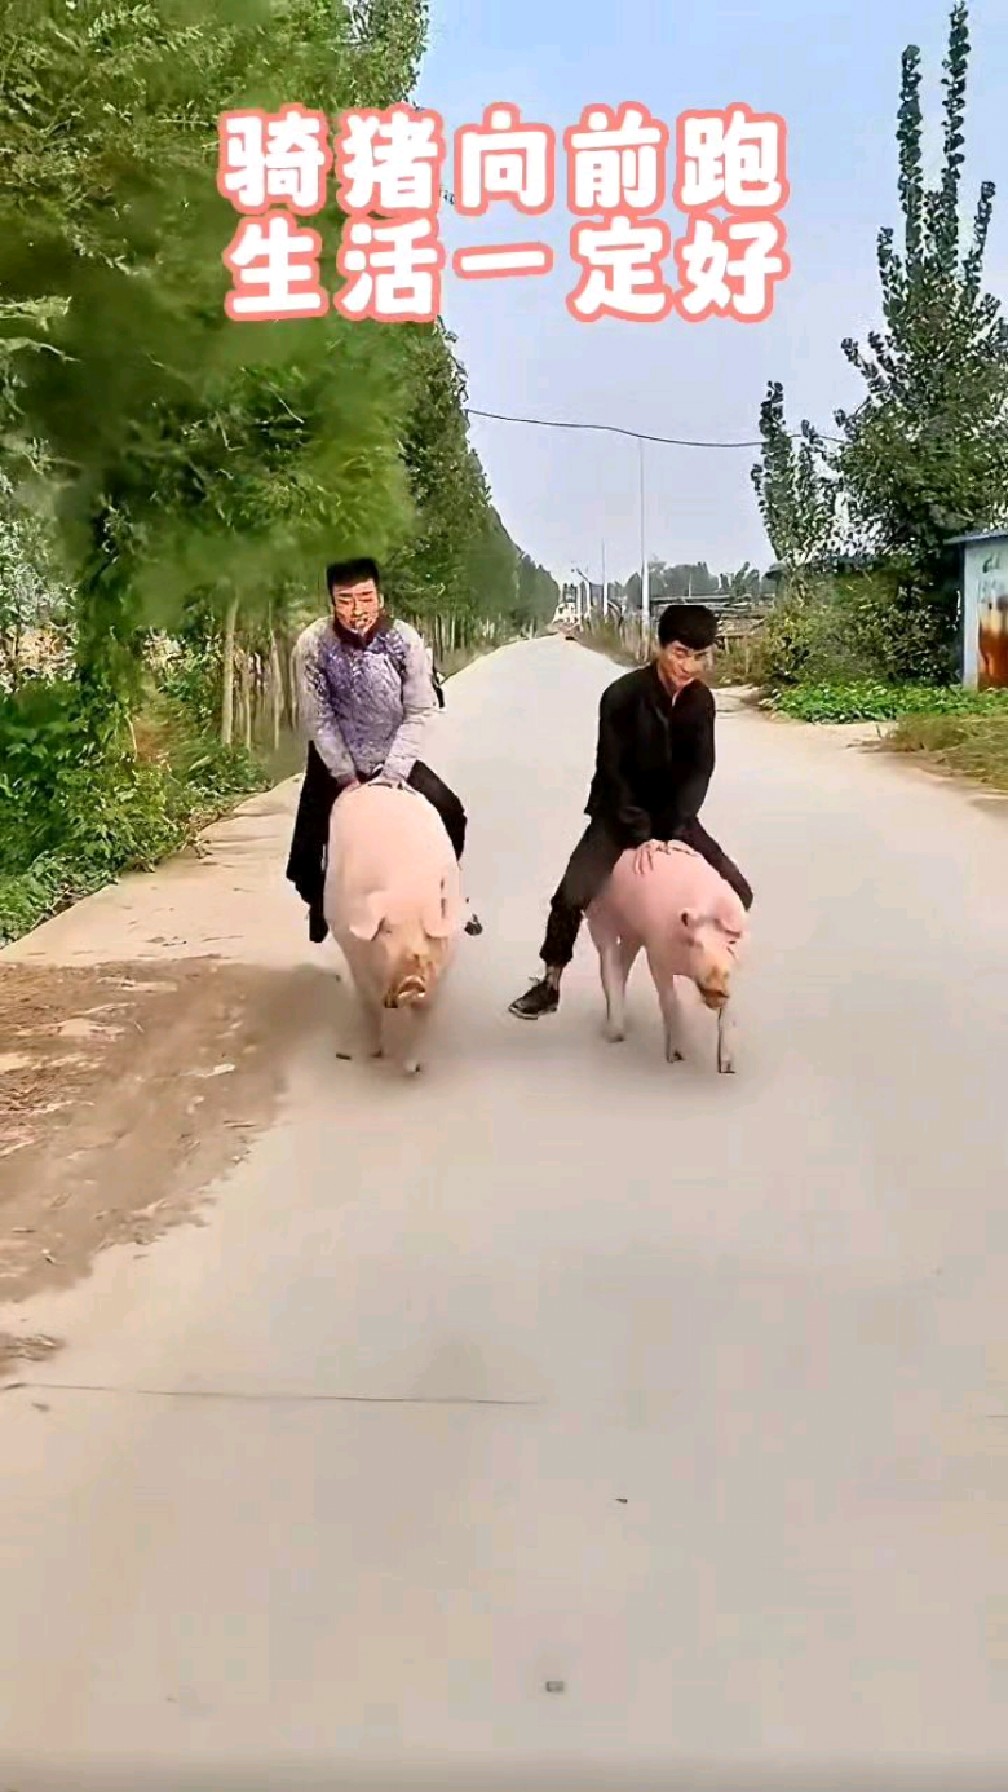 骑猪向前跑,生活一定好